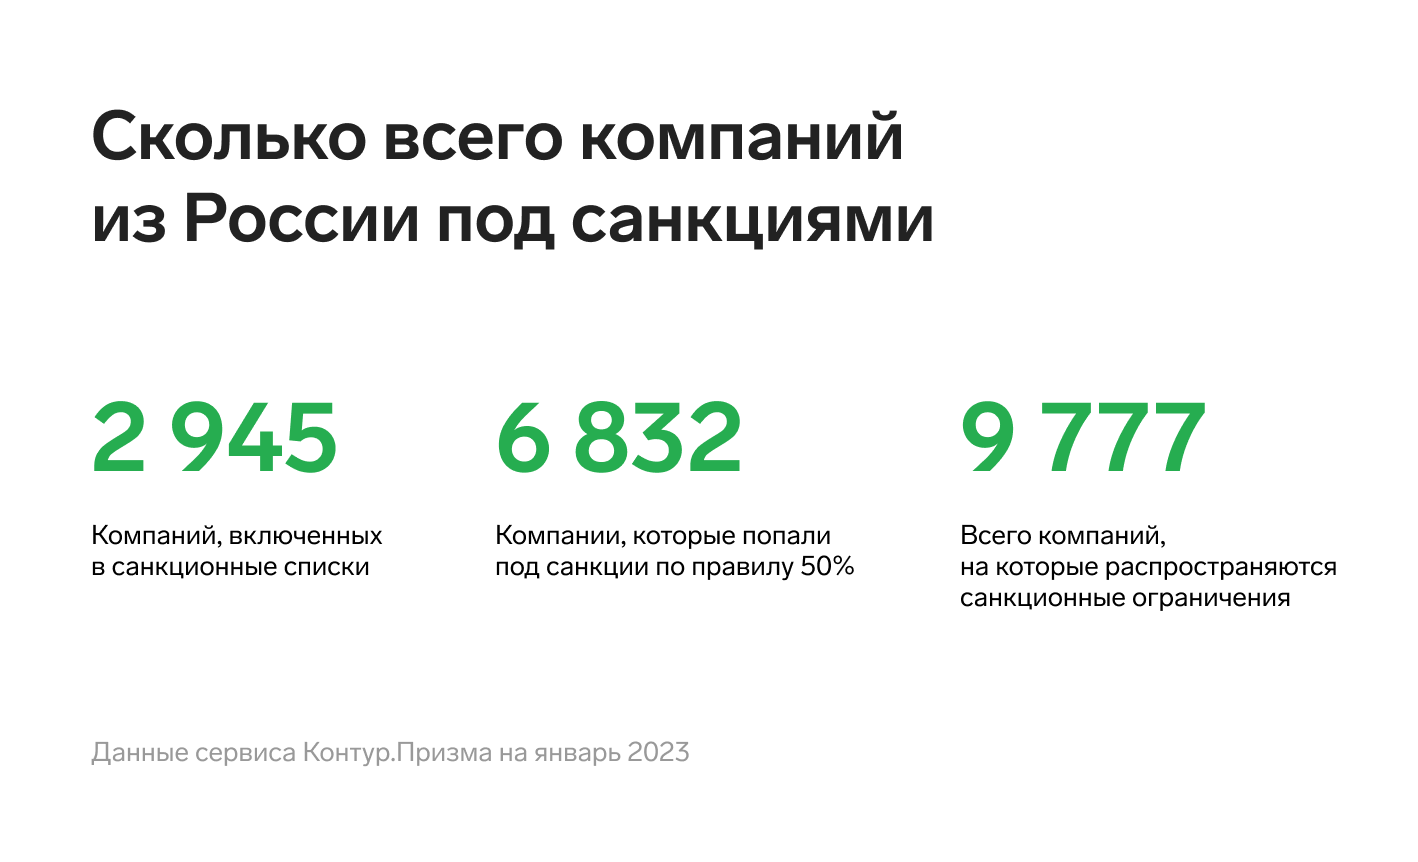 Число российских компаний под санкциями увеличилось вдвое за последний год  — Контур.Призма — Контур